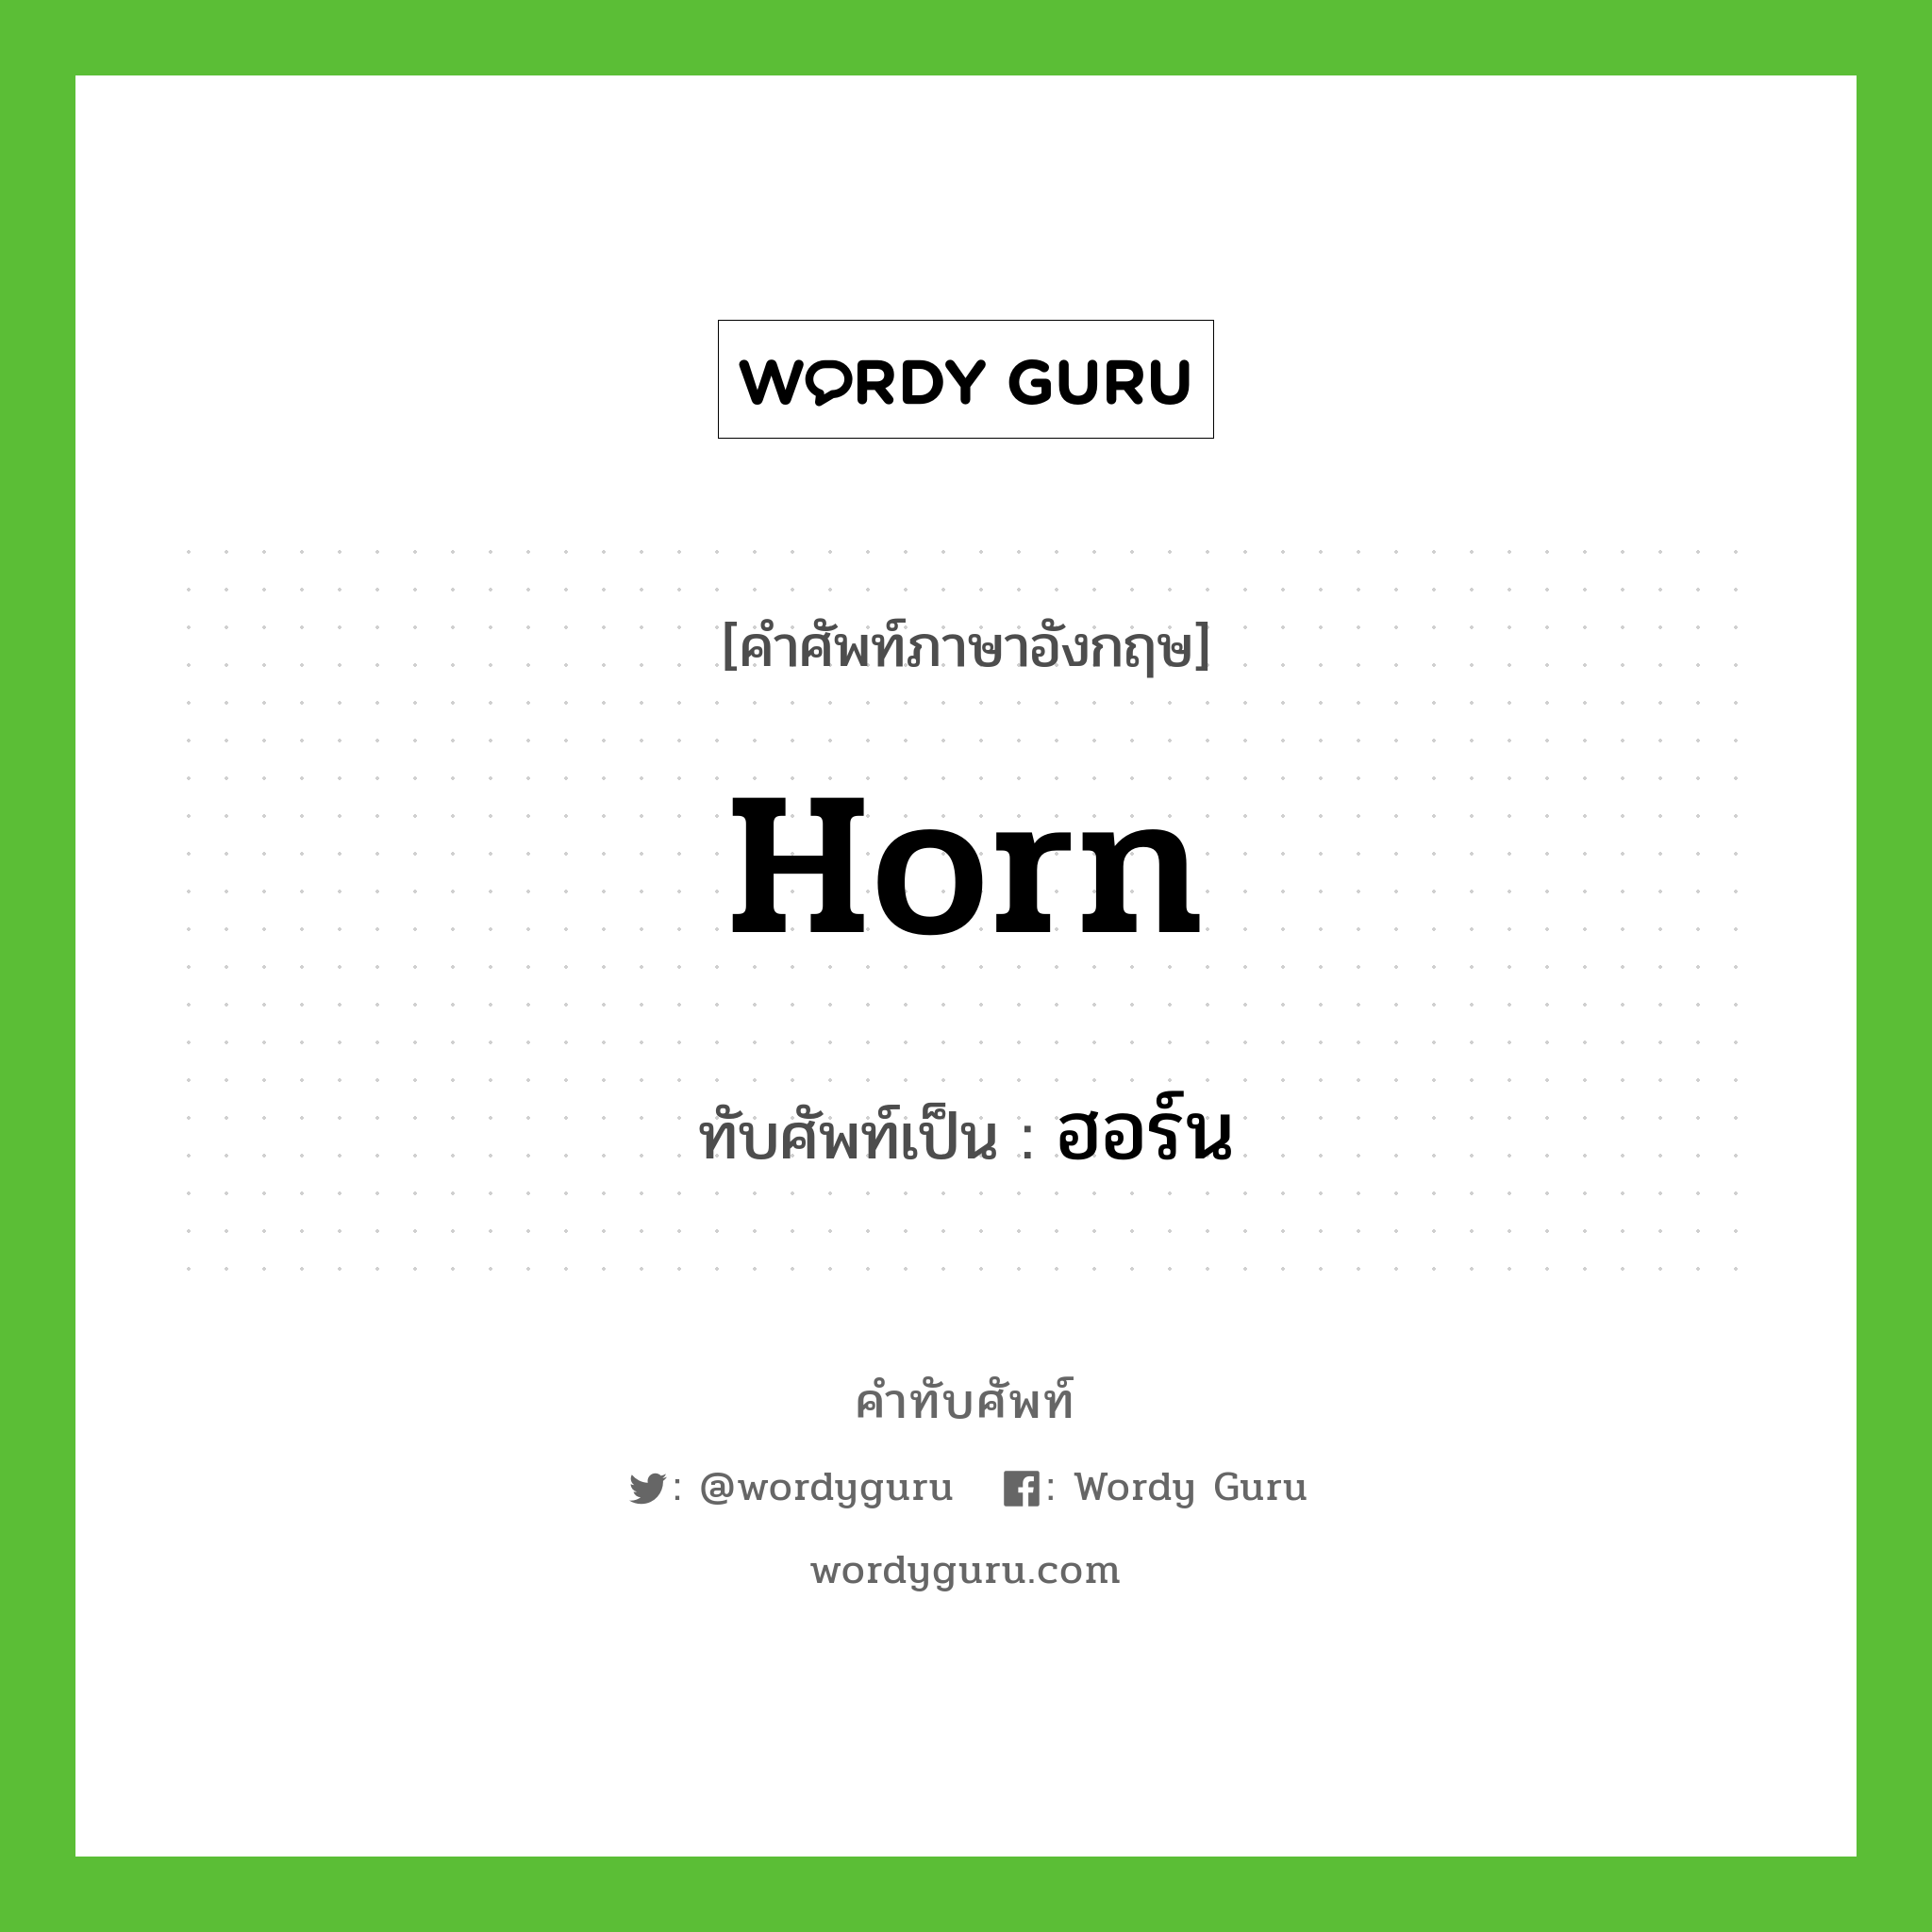 horn เขียนเป็นคำไทยว่าอะไร?, คำศัพท์ภาษาอังกฤษ horn ทับศัพท์เป็น ฮอร์น